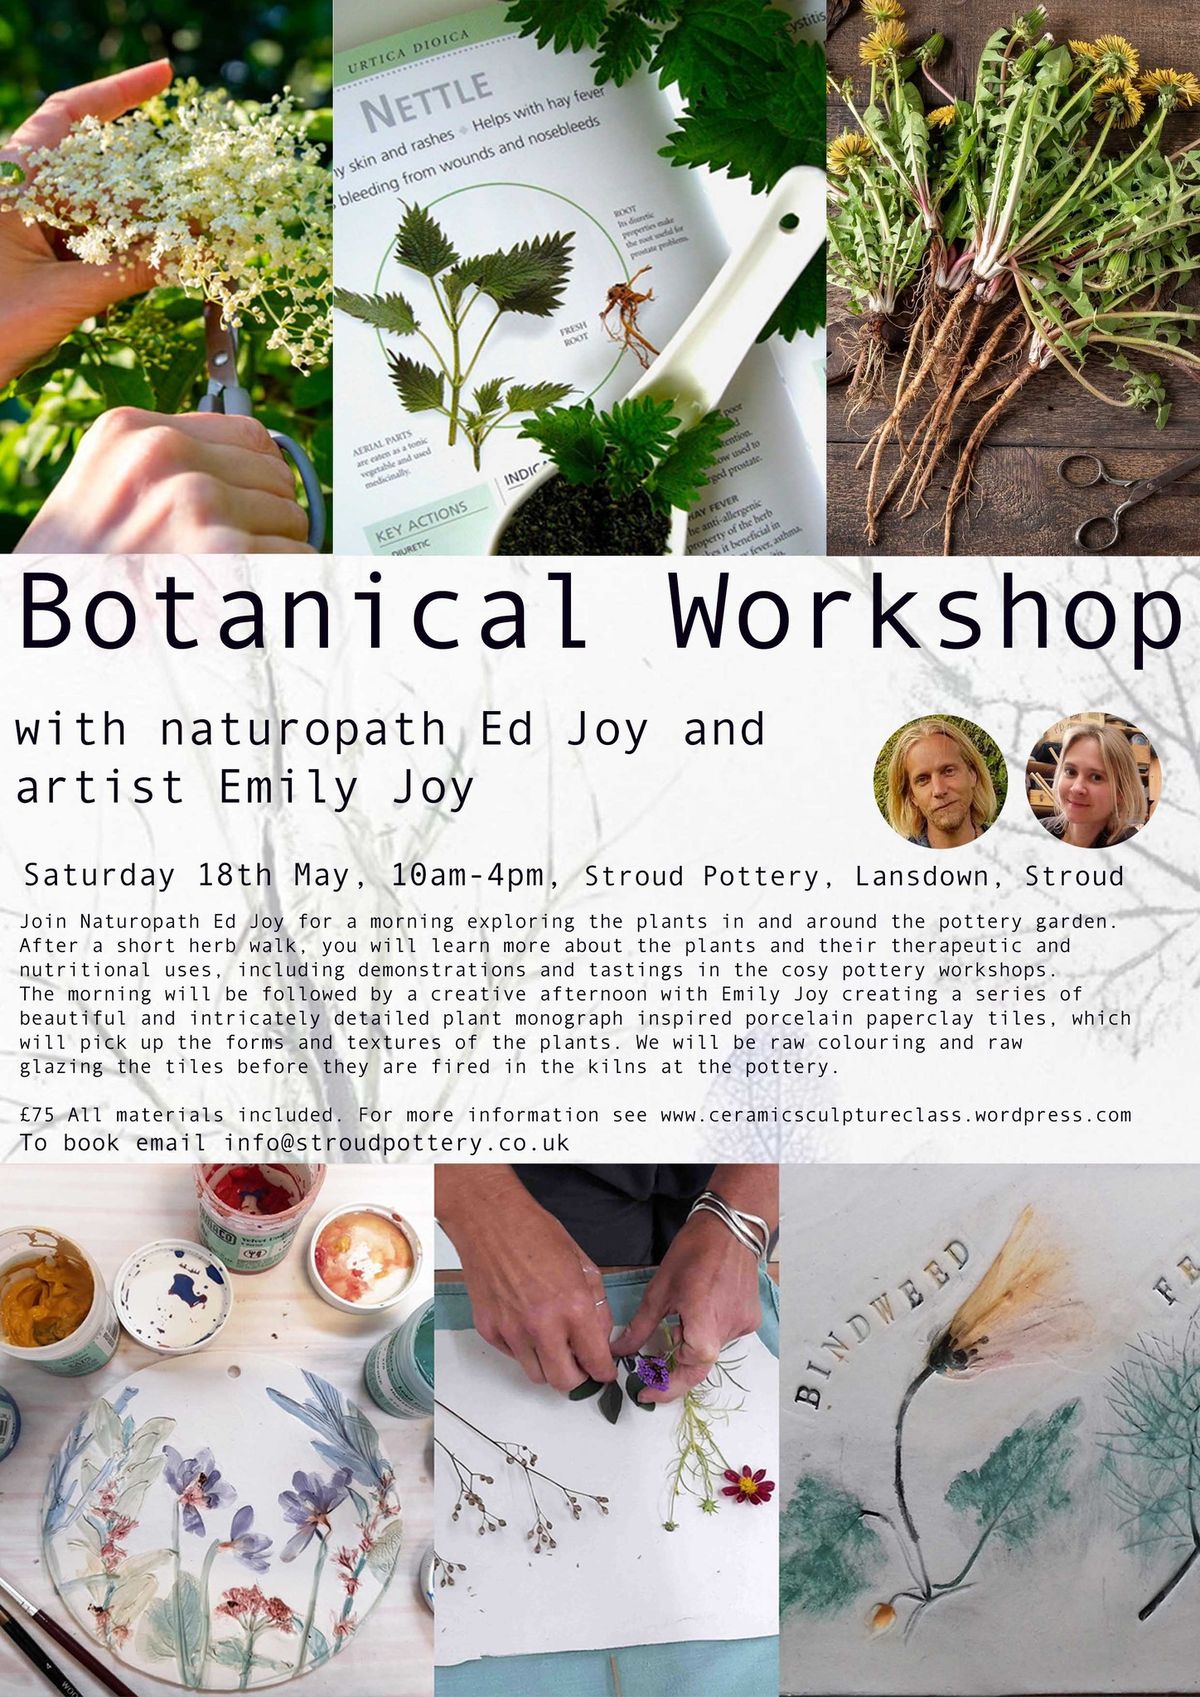 Botanical workshop with Naturopath Ed Joy and artist Emily Joy 